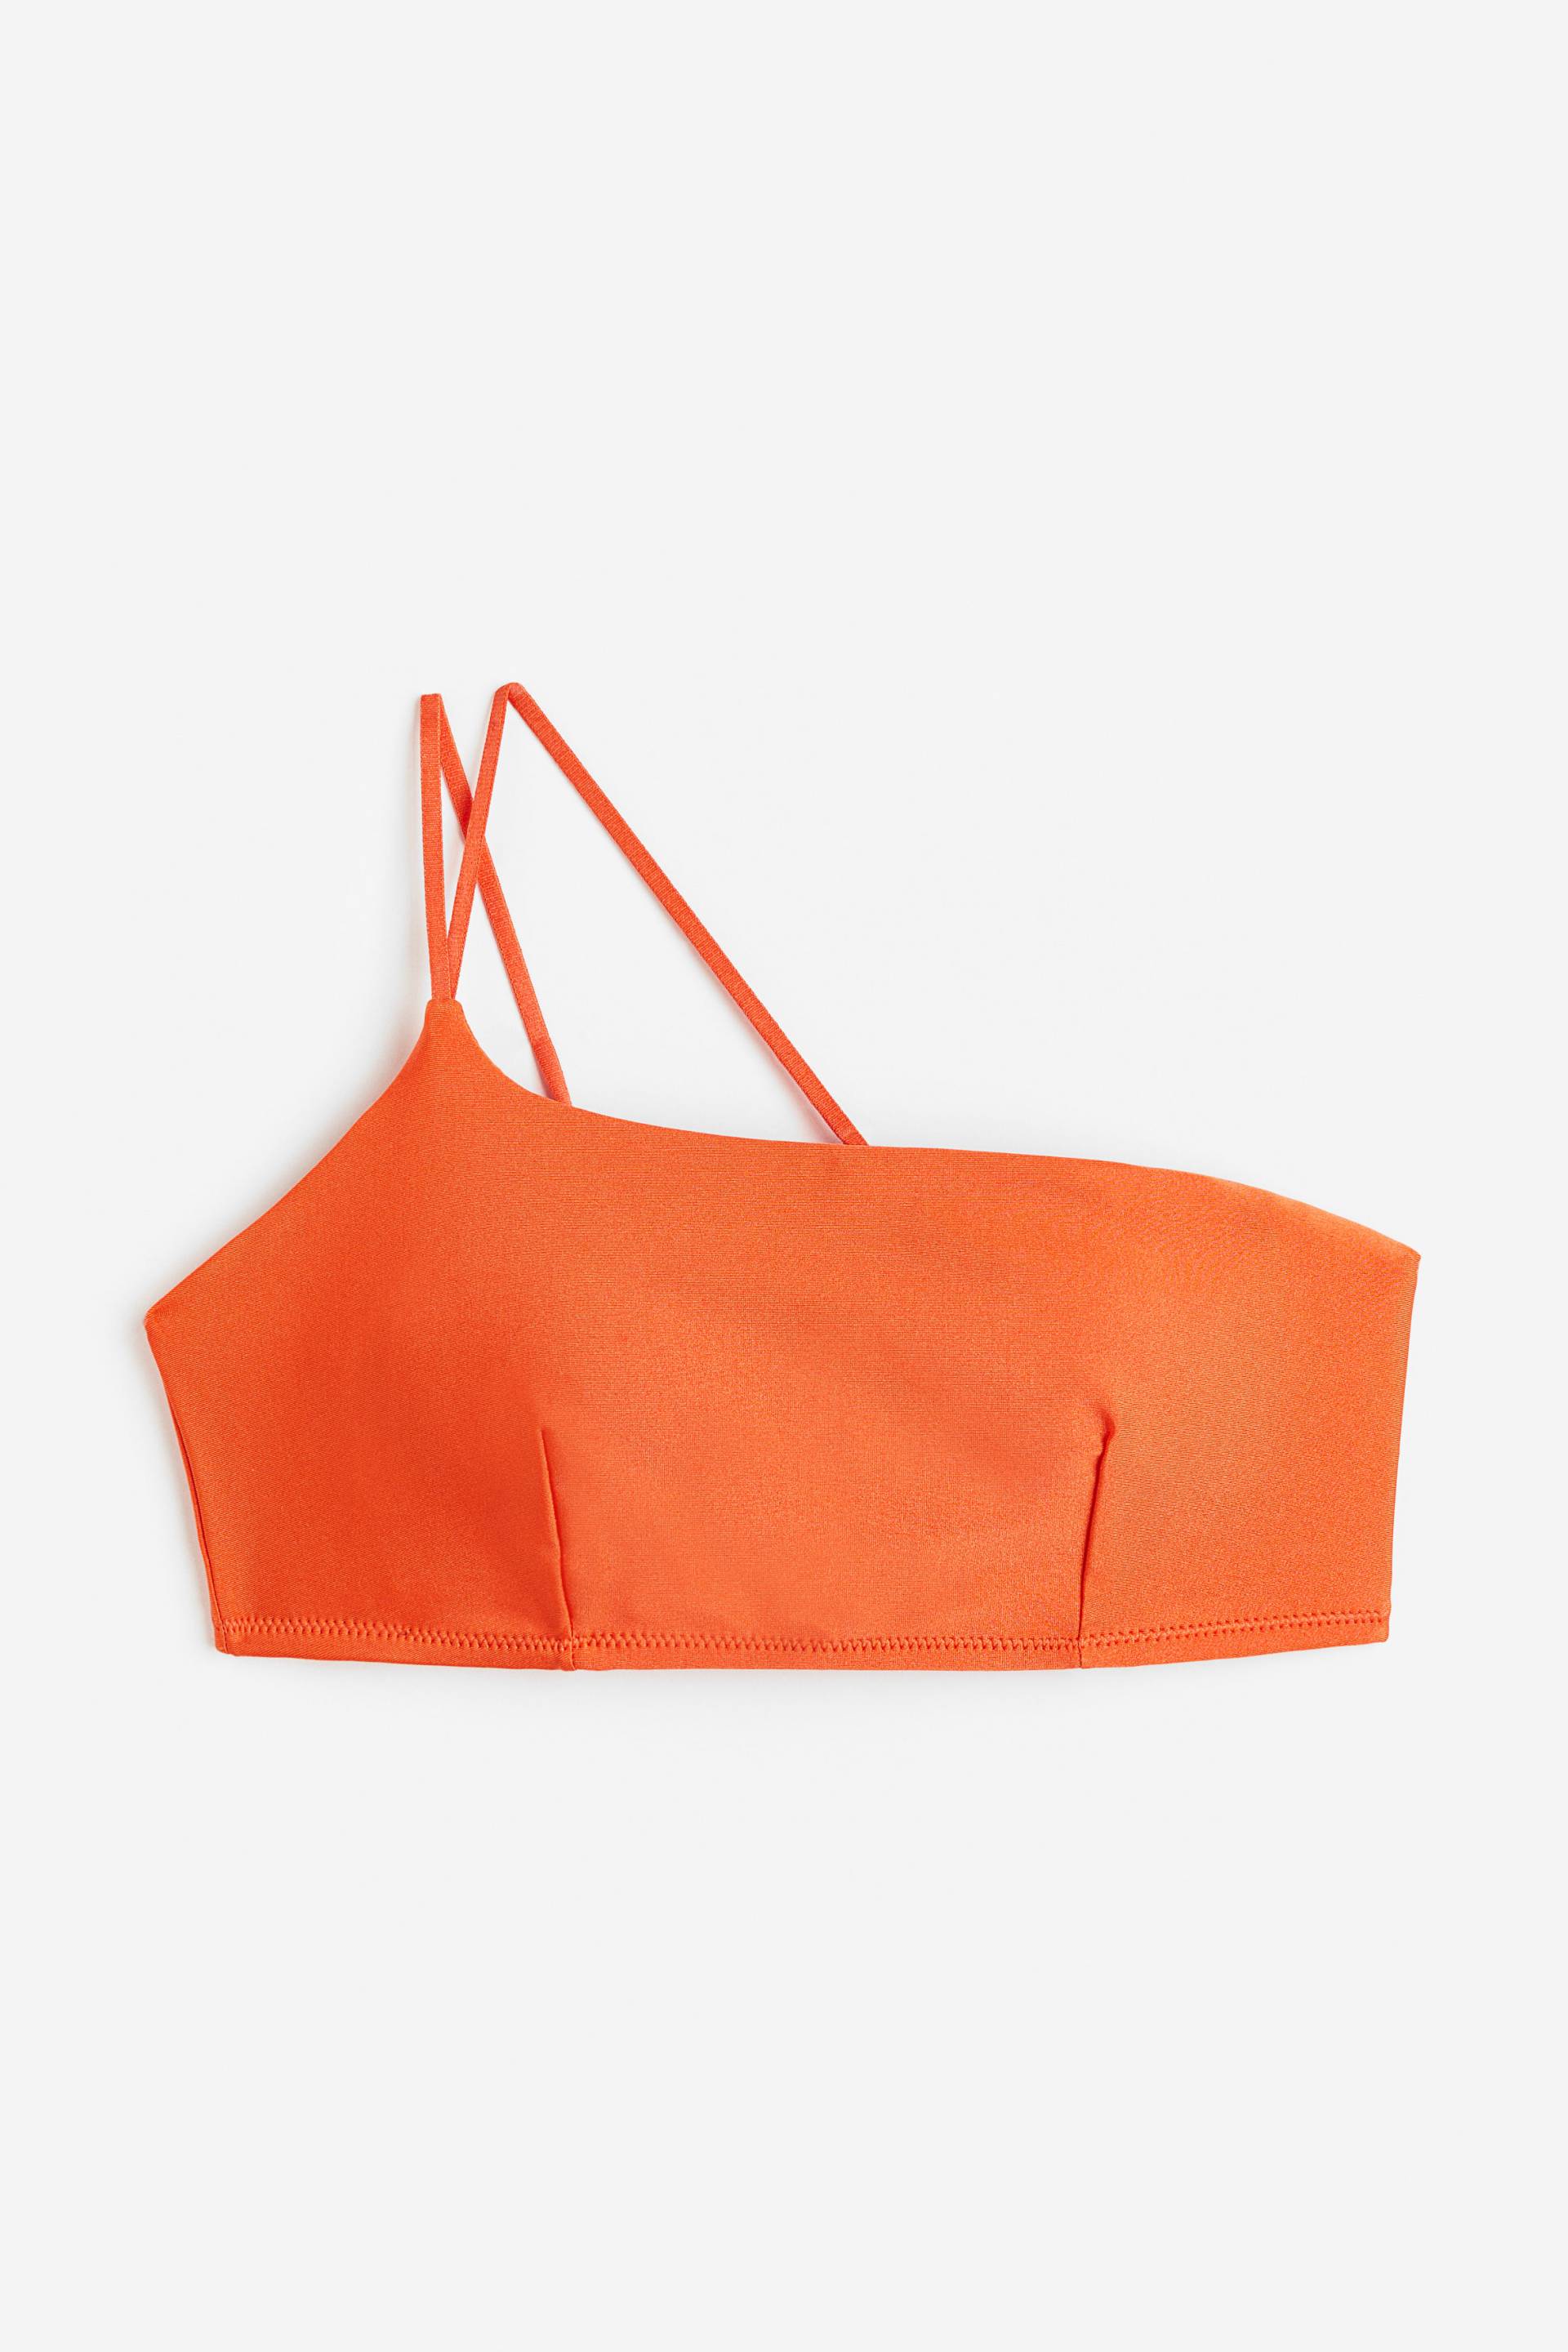 H&M Wattiertes One-Shoulder-Bikinitop Orange, Bikini-Oberteil in Größe 34. Farbe: Orange 008 von H&M